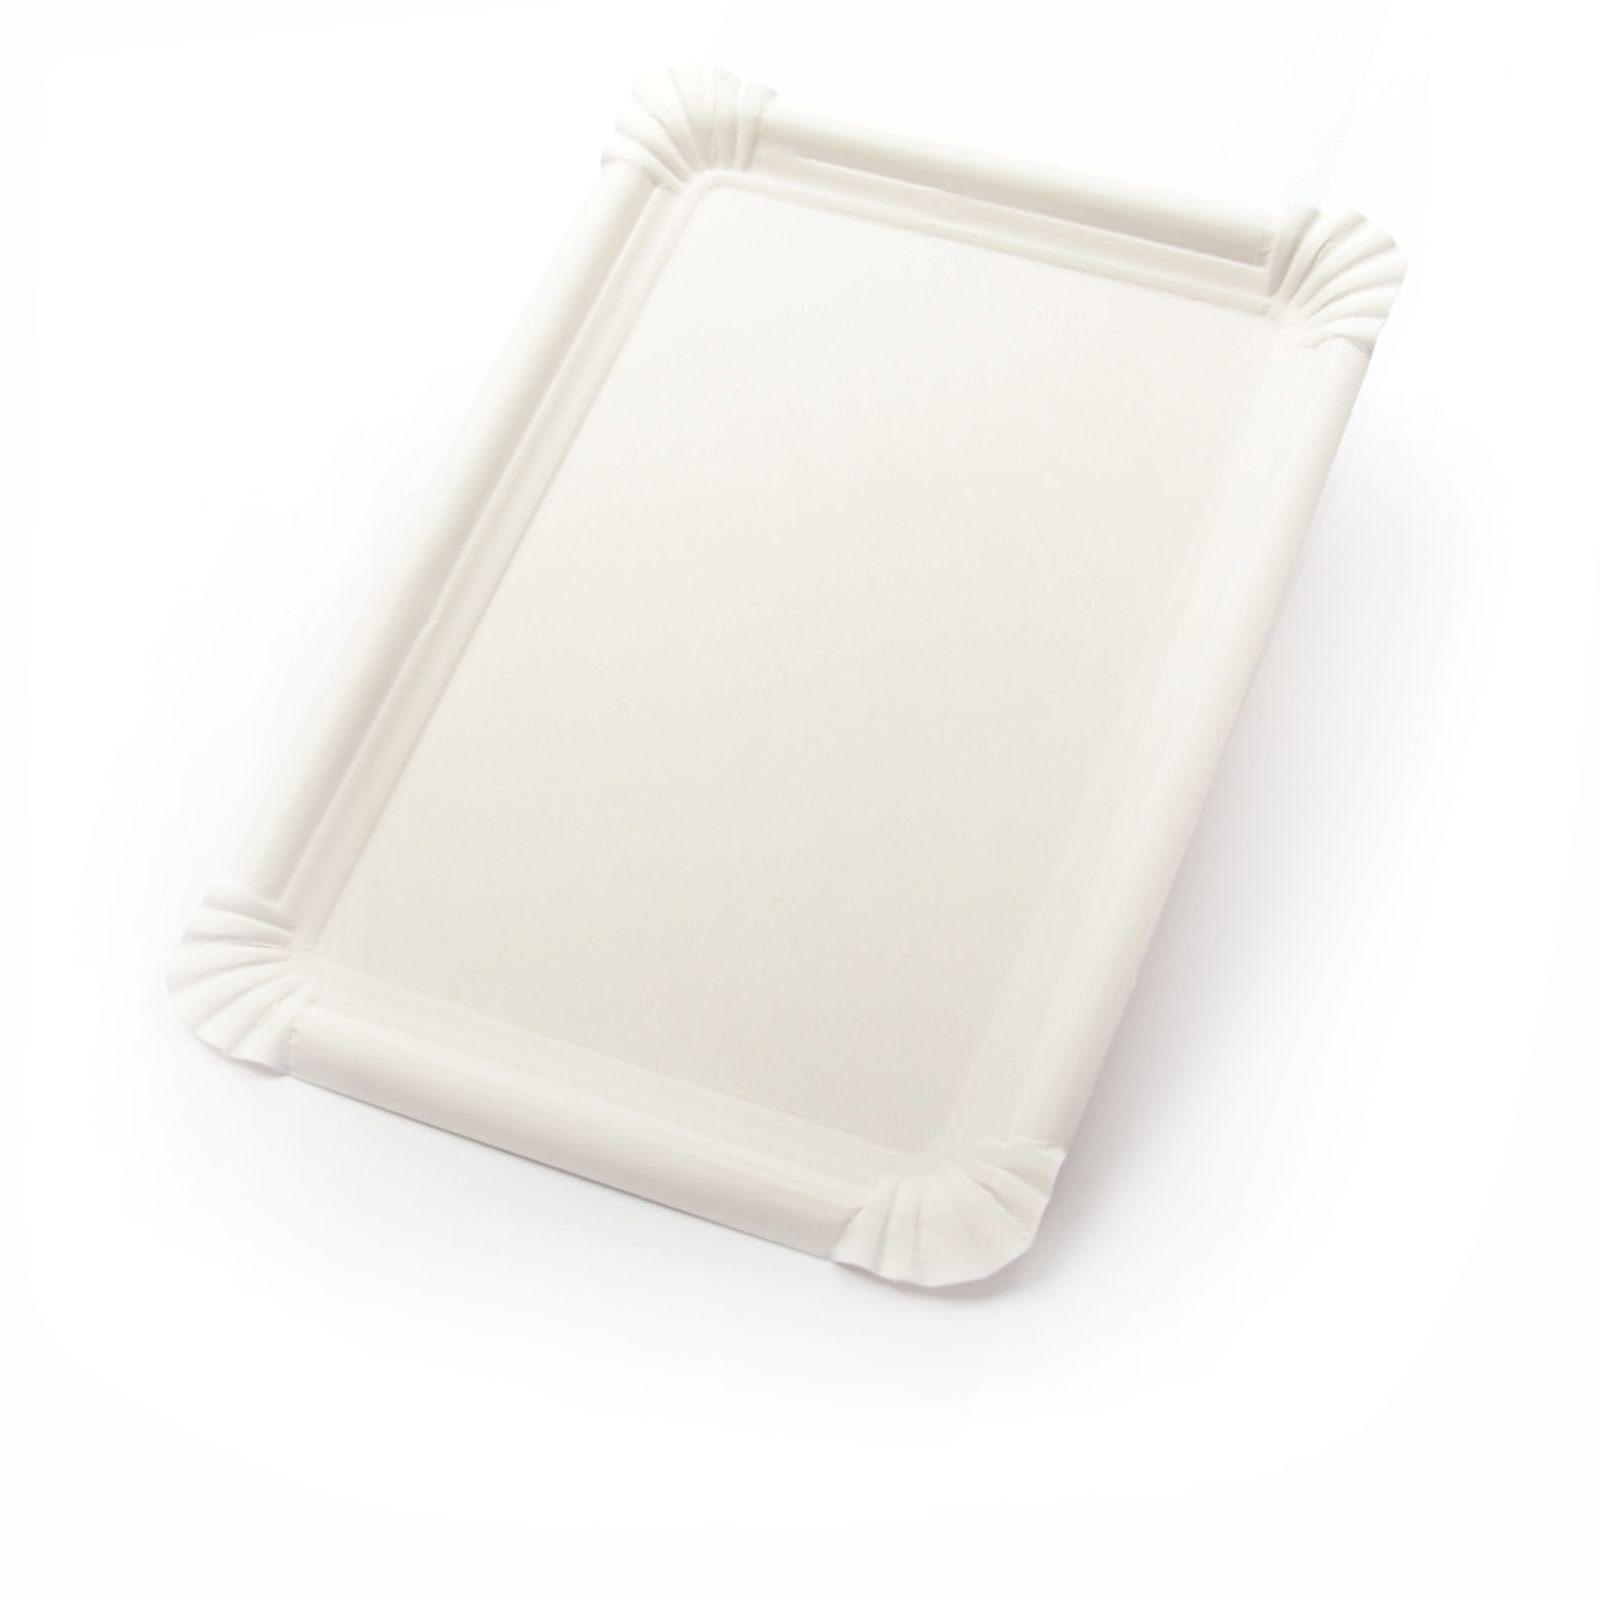 Einwegteller 1000 Stück Pappteller rechteckig (18×26 cm), ohne Beschichtung, weiß, Frischfaser Kuchenteller Kuchenunterleger Tortenteller Imbissteller